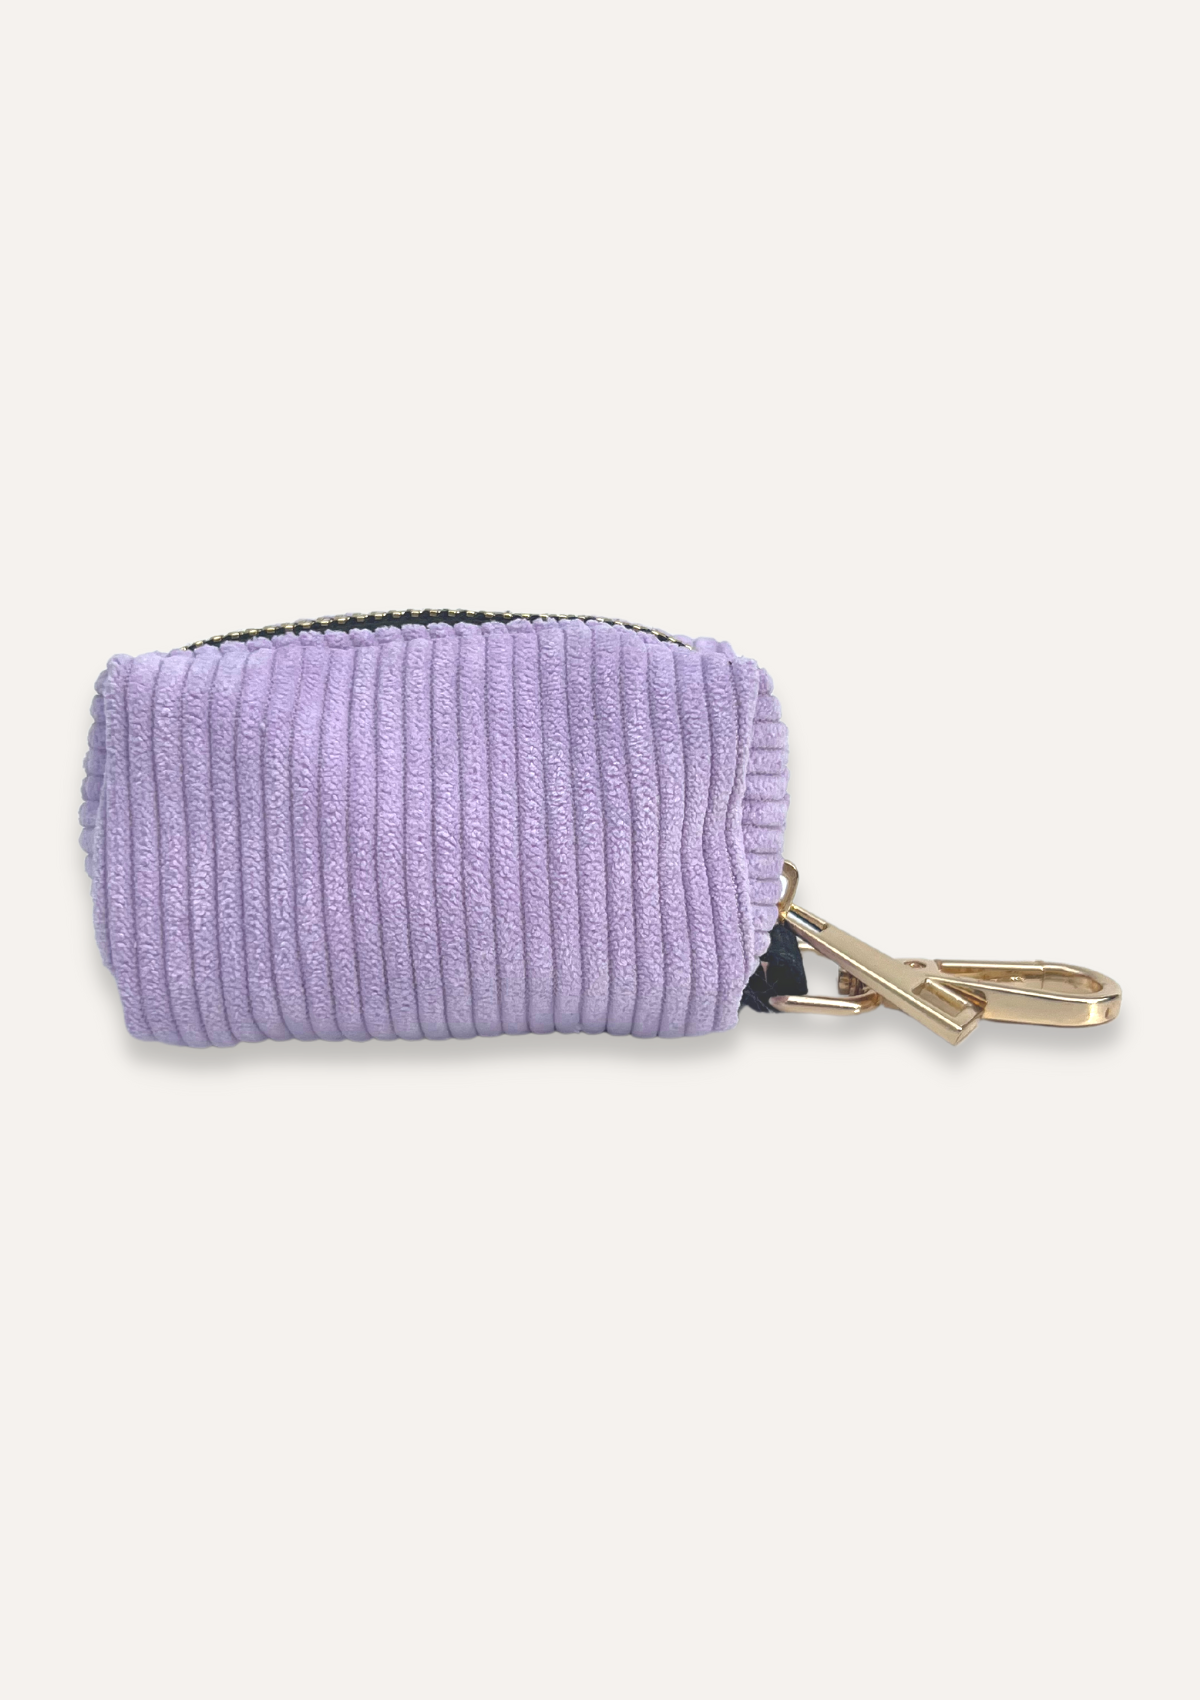 Bella Corduroy Poop Bag Holder - Lavender